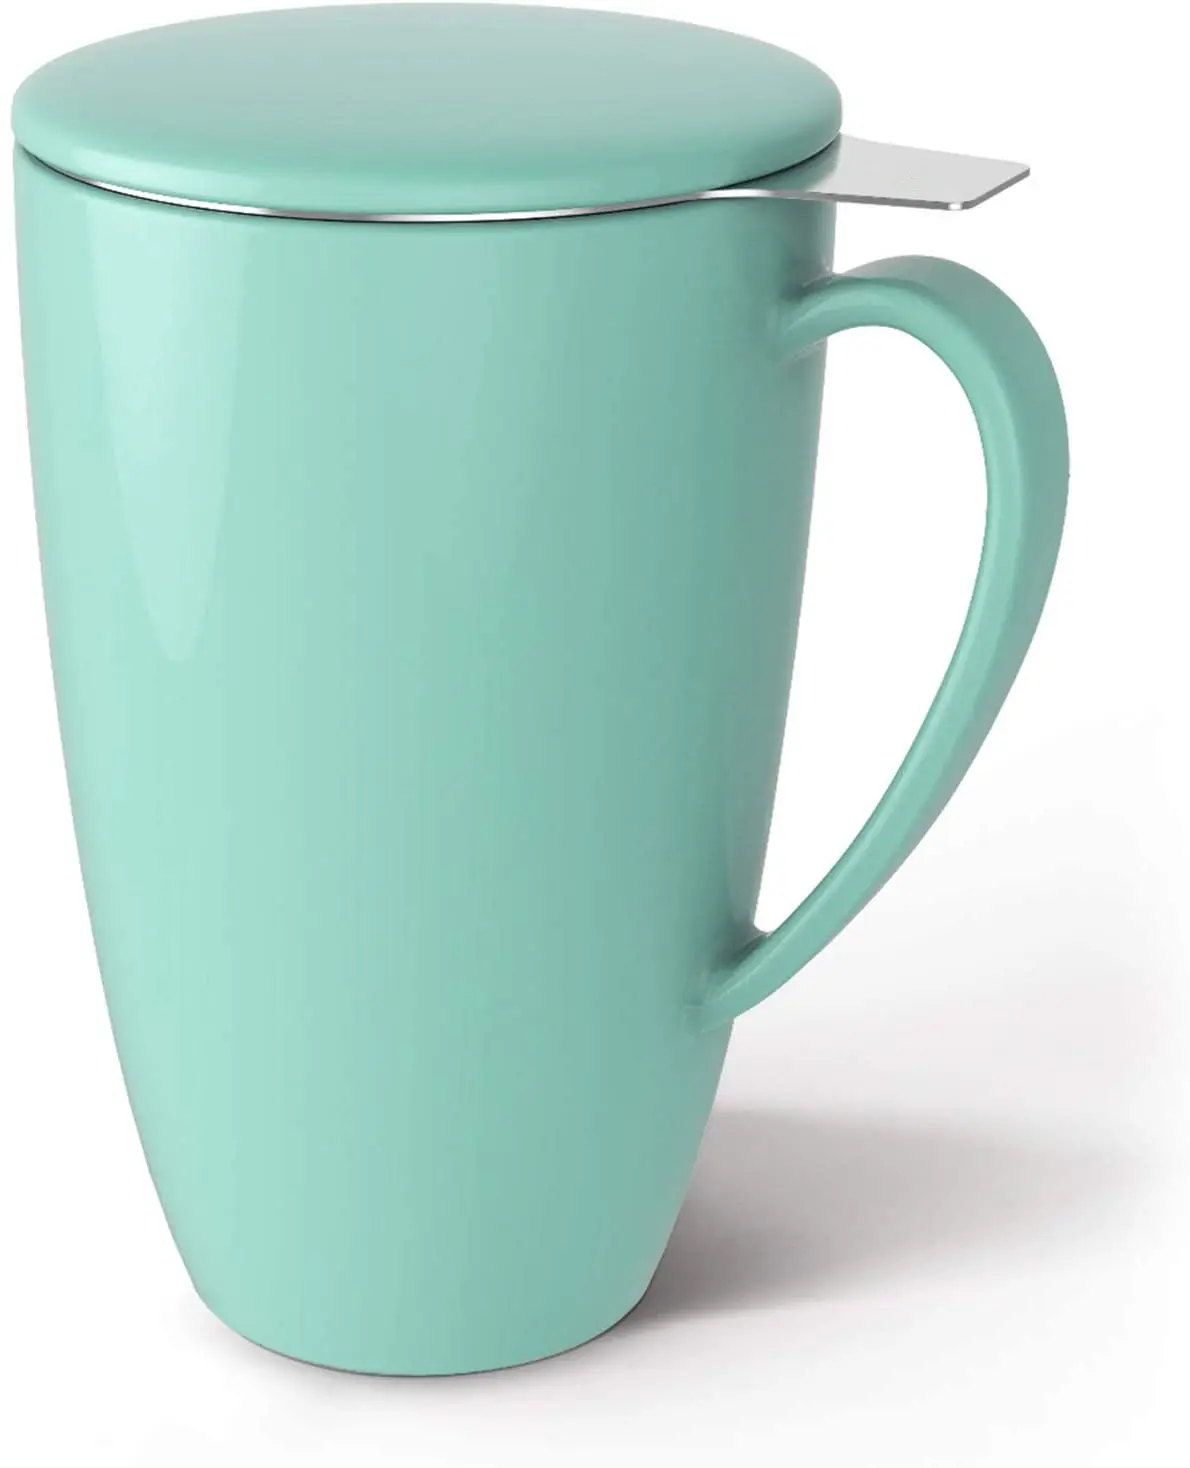 Tazze in porcellana per uso alimentare di vendita calda infusore per tè tazza bottiglie d'acqua Logo personalizzato Set Standard per feste sacchetto del OPP, scatola dei colori